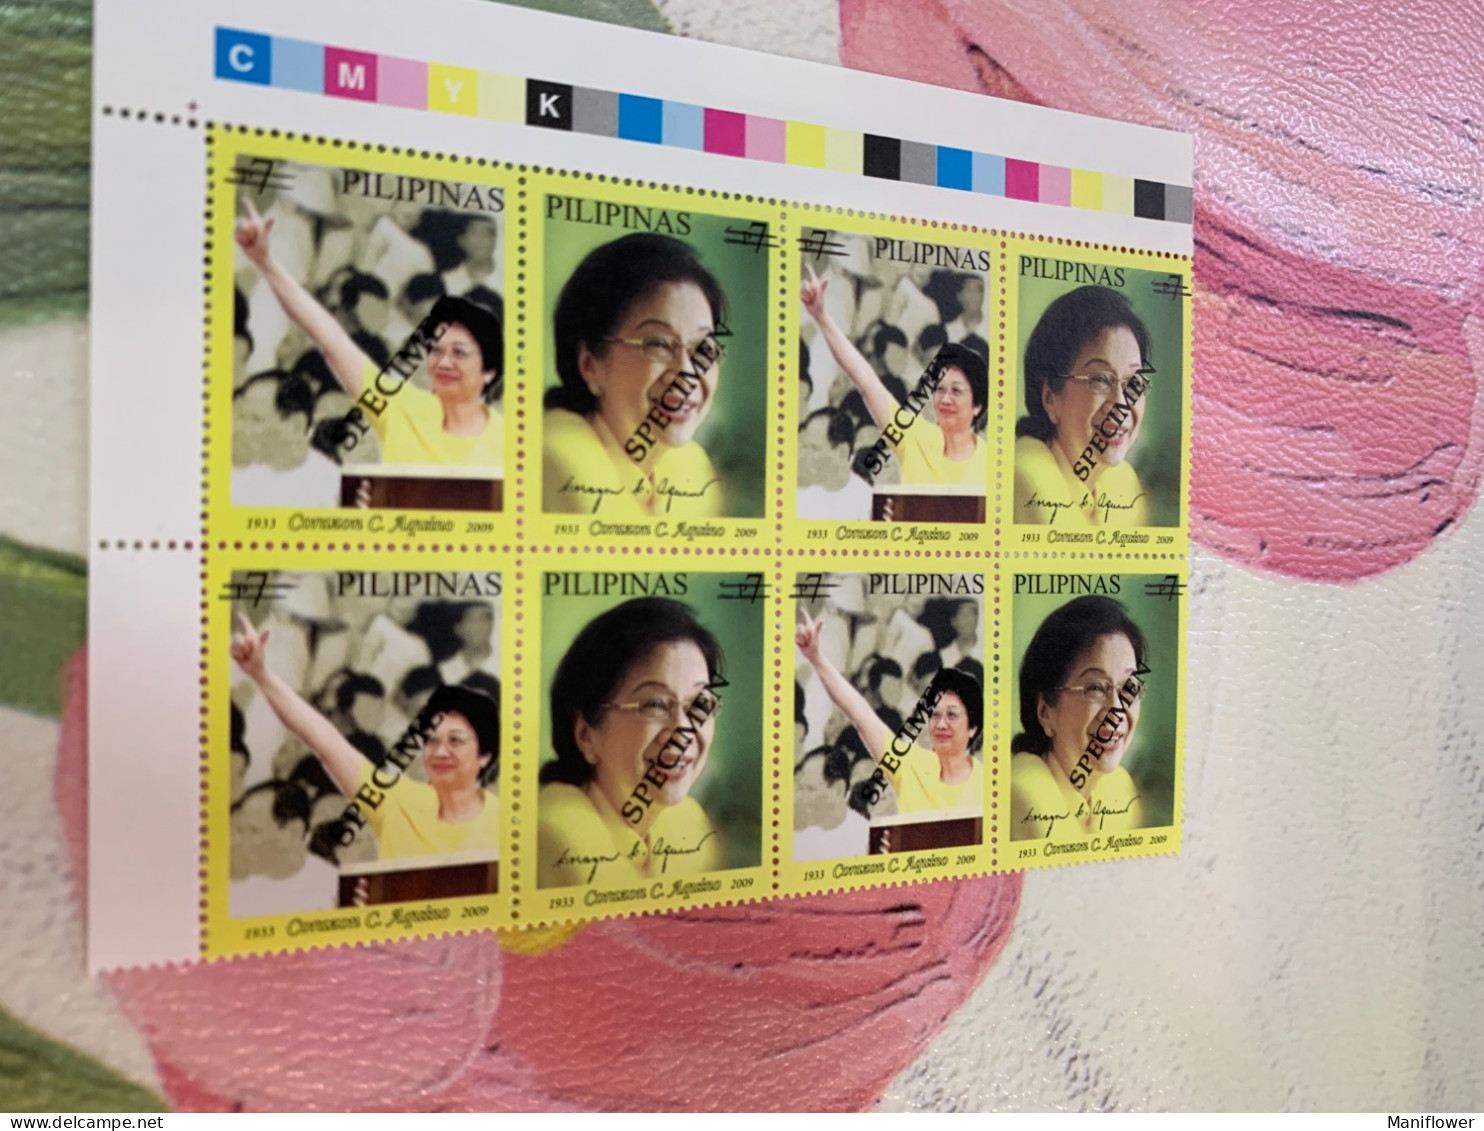 Philippines Stamp Specimen 2009 Block Aquino President - Filipinas